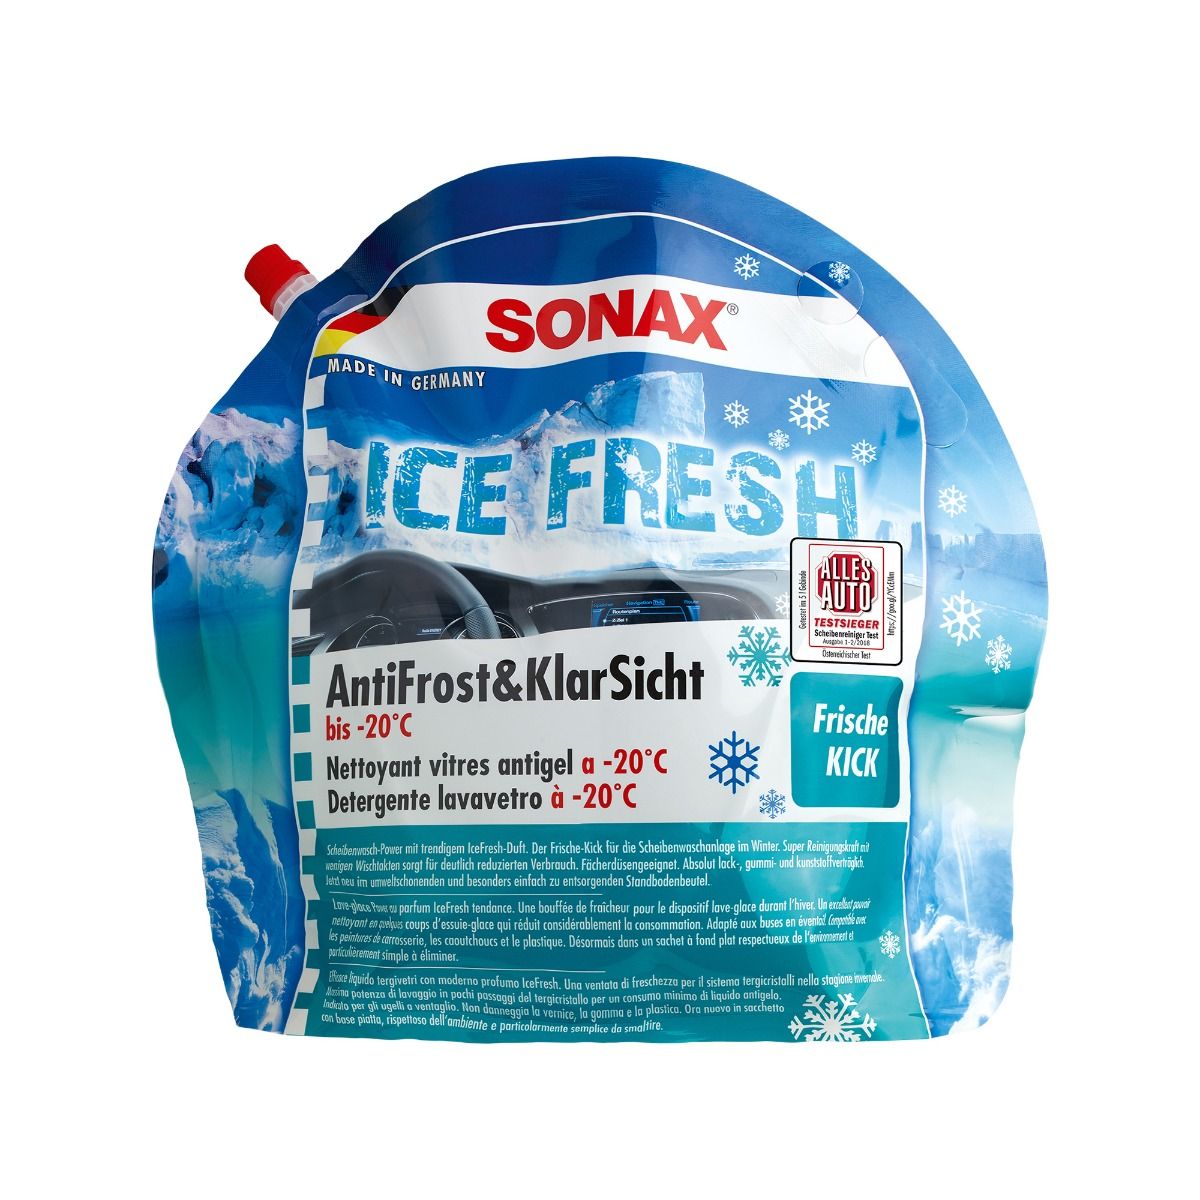 Sonax AntiFrost&KlarSicht IceFresh 3 L bei ATO24 ❗